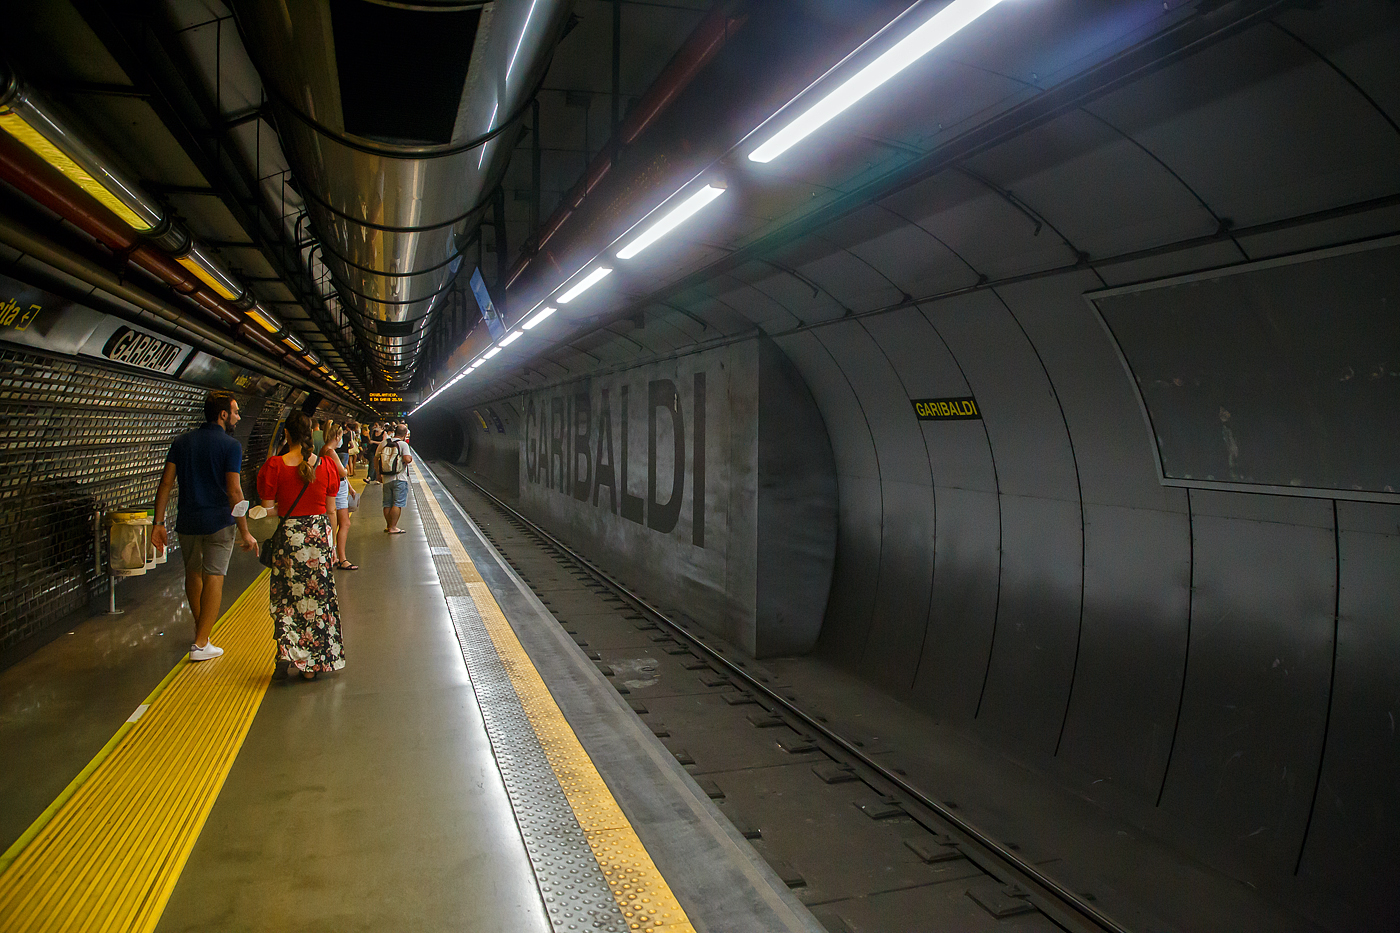 Die U-Bahn Station Garibaldi (beim Bahnhof Napoli Centrale) der Linie 1 der U-Bahn Neapel (Linea 1 della Metropolitana di Napoli) am 15.07.2022. Die Linie 1 wird von der ANM - Azienda Napoletana Mobilità betrieben .

Derzeit ist die Station noch End-/Startstation, weitere Tunnelstecken und Stationen sind im Bau, bis 2024 sollen alle fertig sein und die Linie 1 wird dann zu einer Ringlinie.